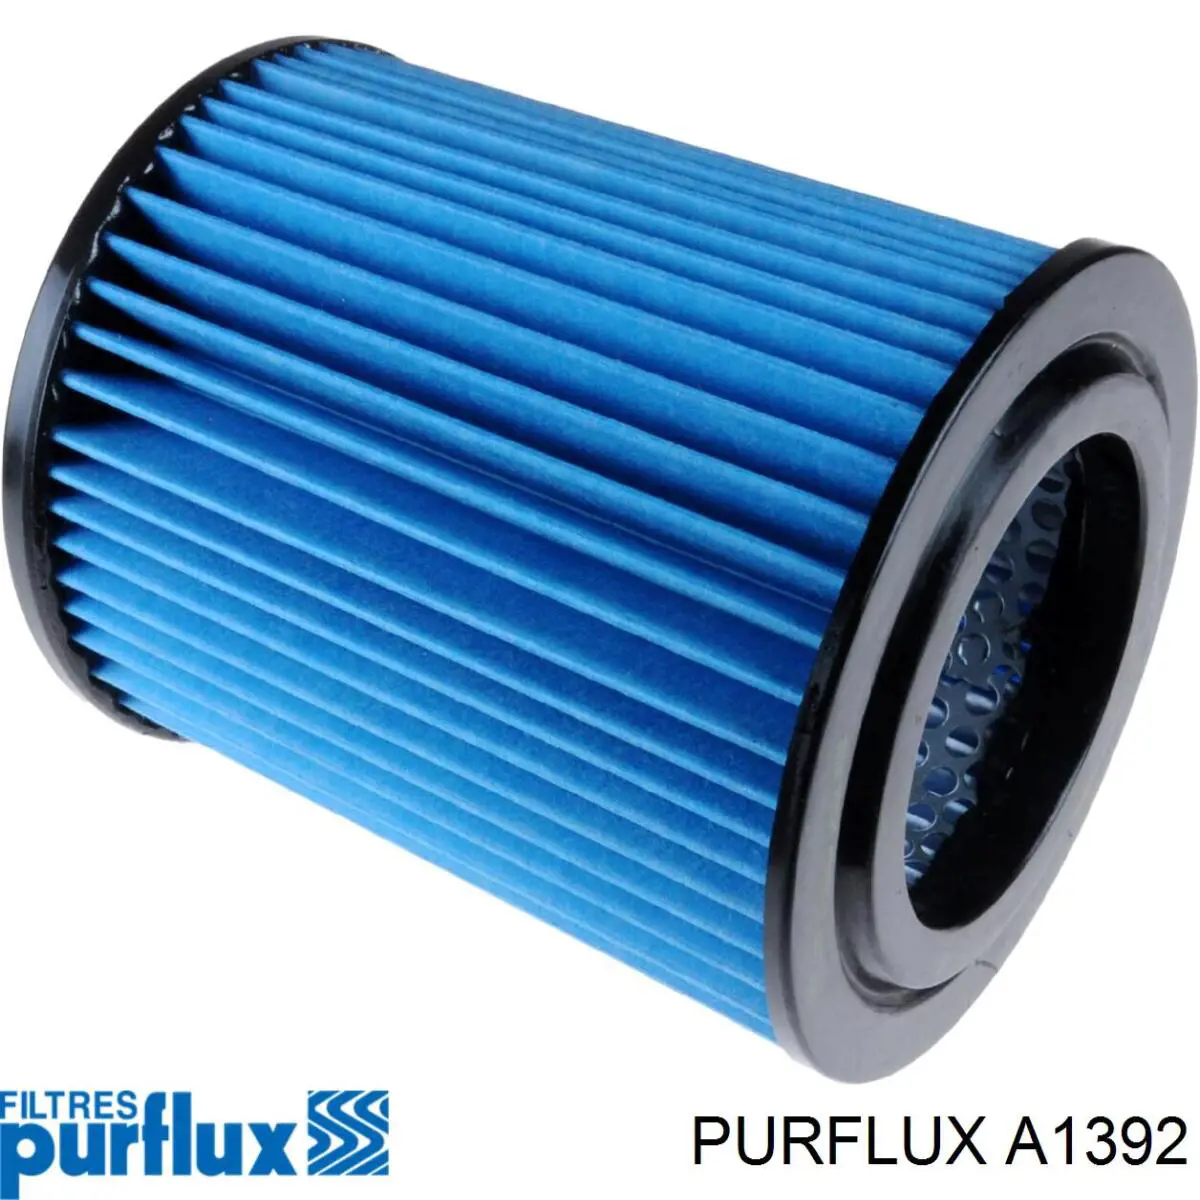 A1392 Purflux filtro de aire